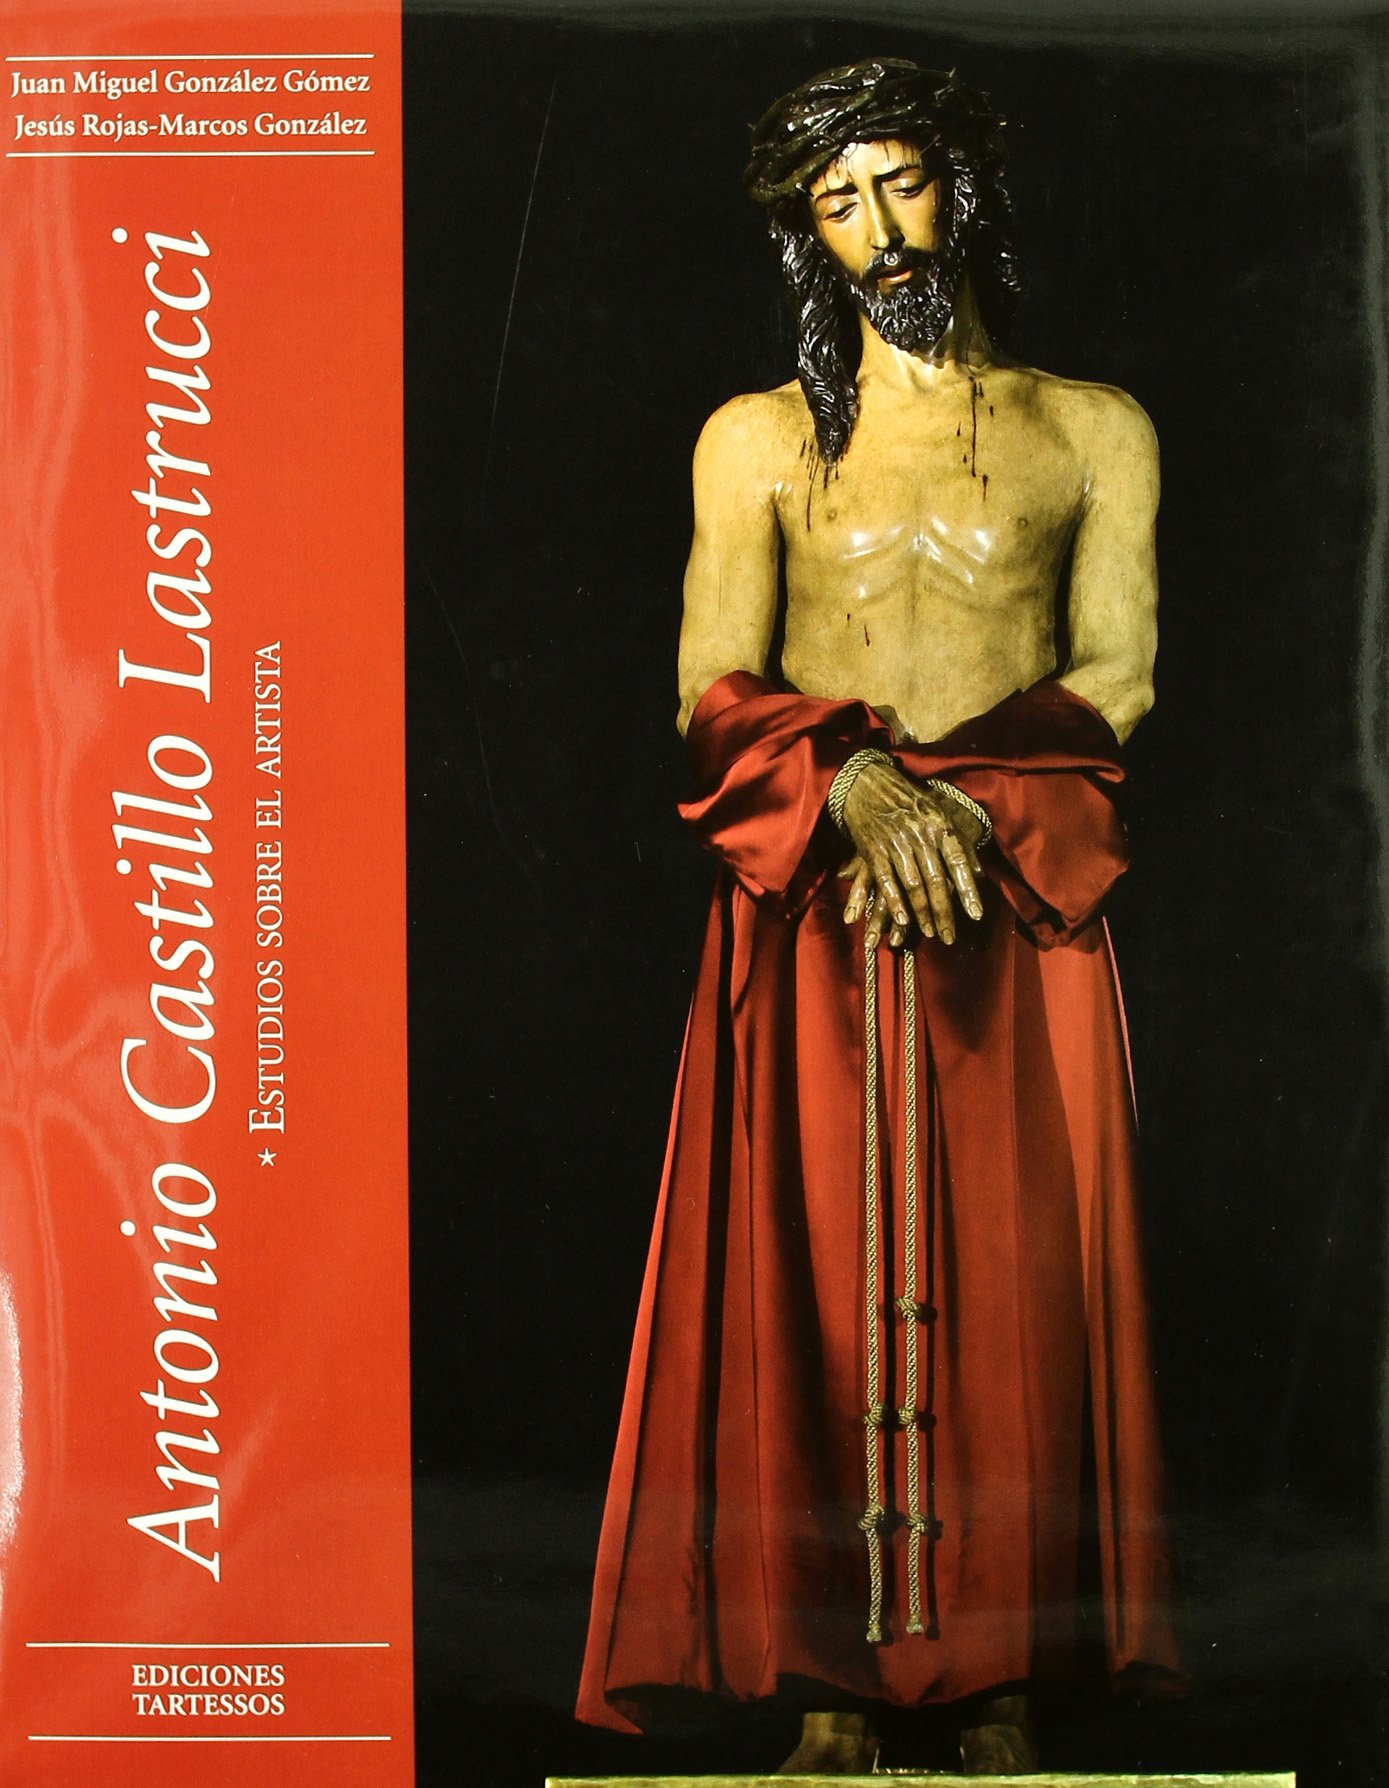 Imagen de portada del libro Antonio Castillo Lastrucci